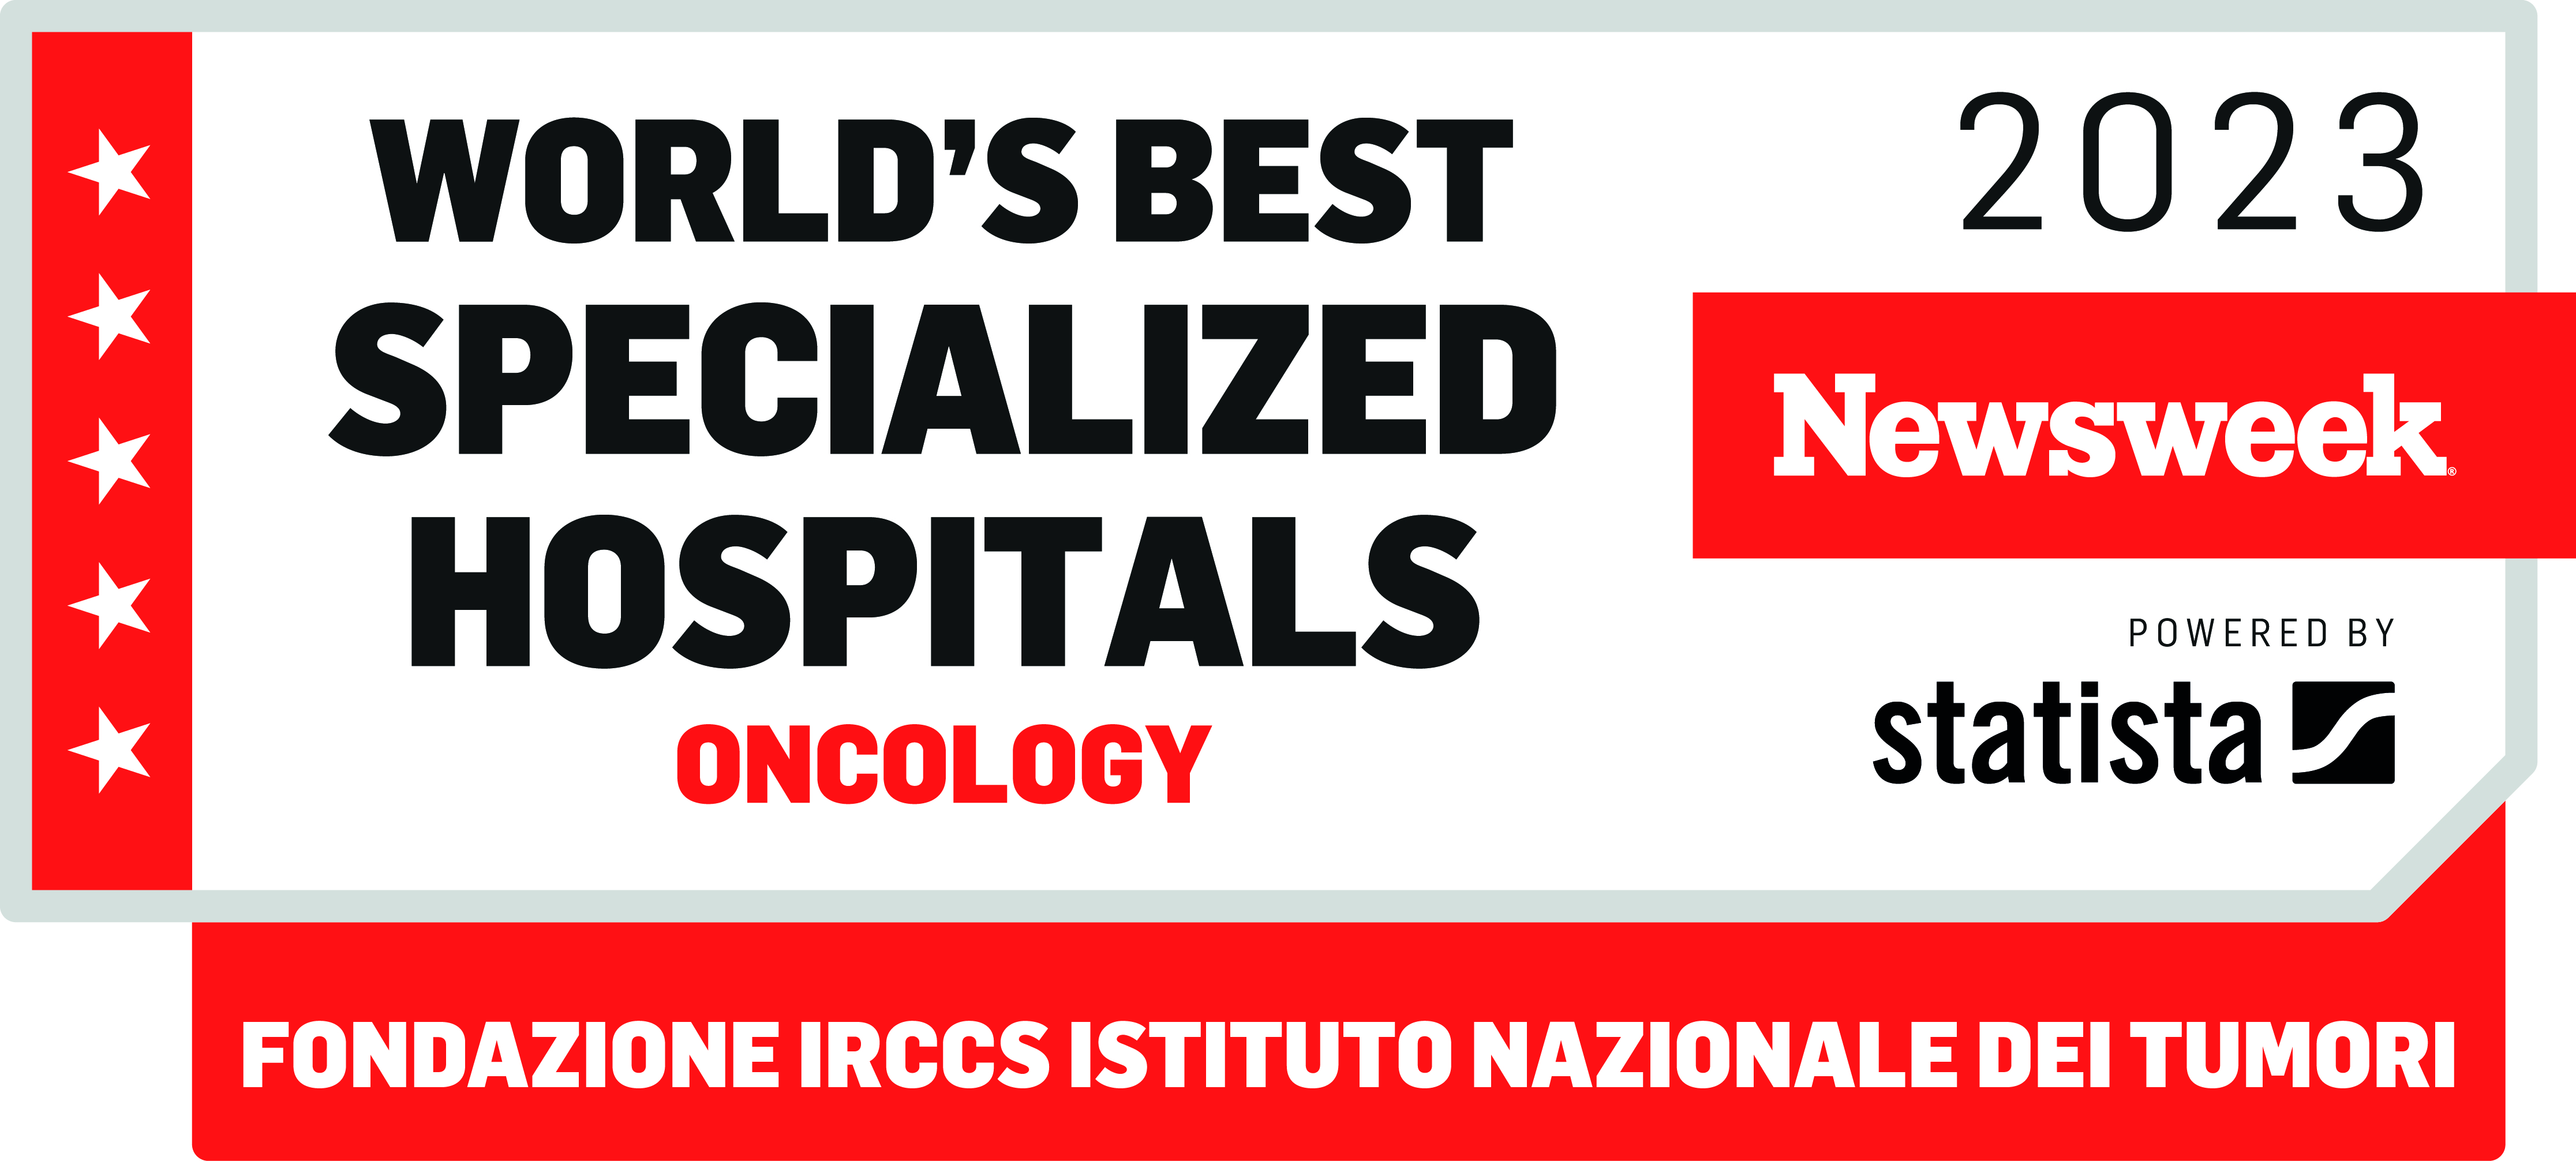  L'Istituto Nazionale dei Tumori di Milano si conferma il miglior centro oncologico pubblico italiano 